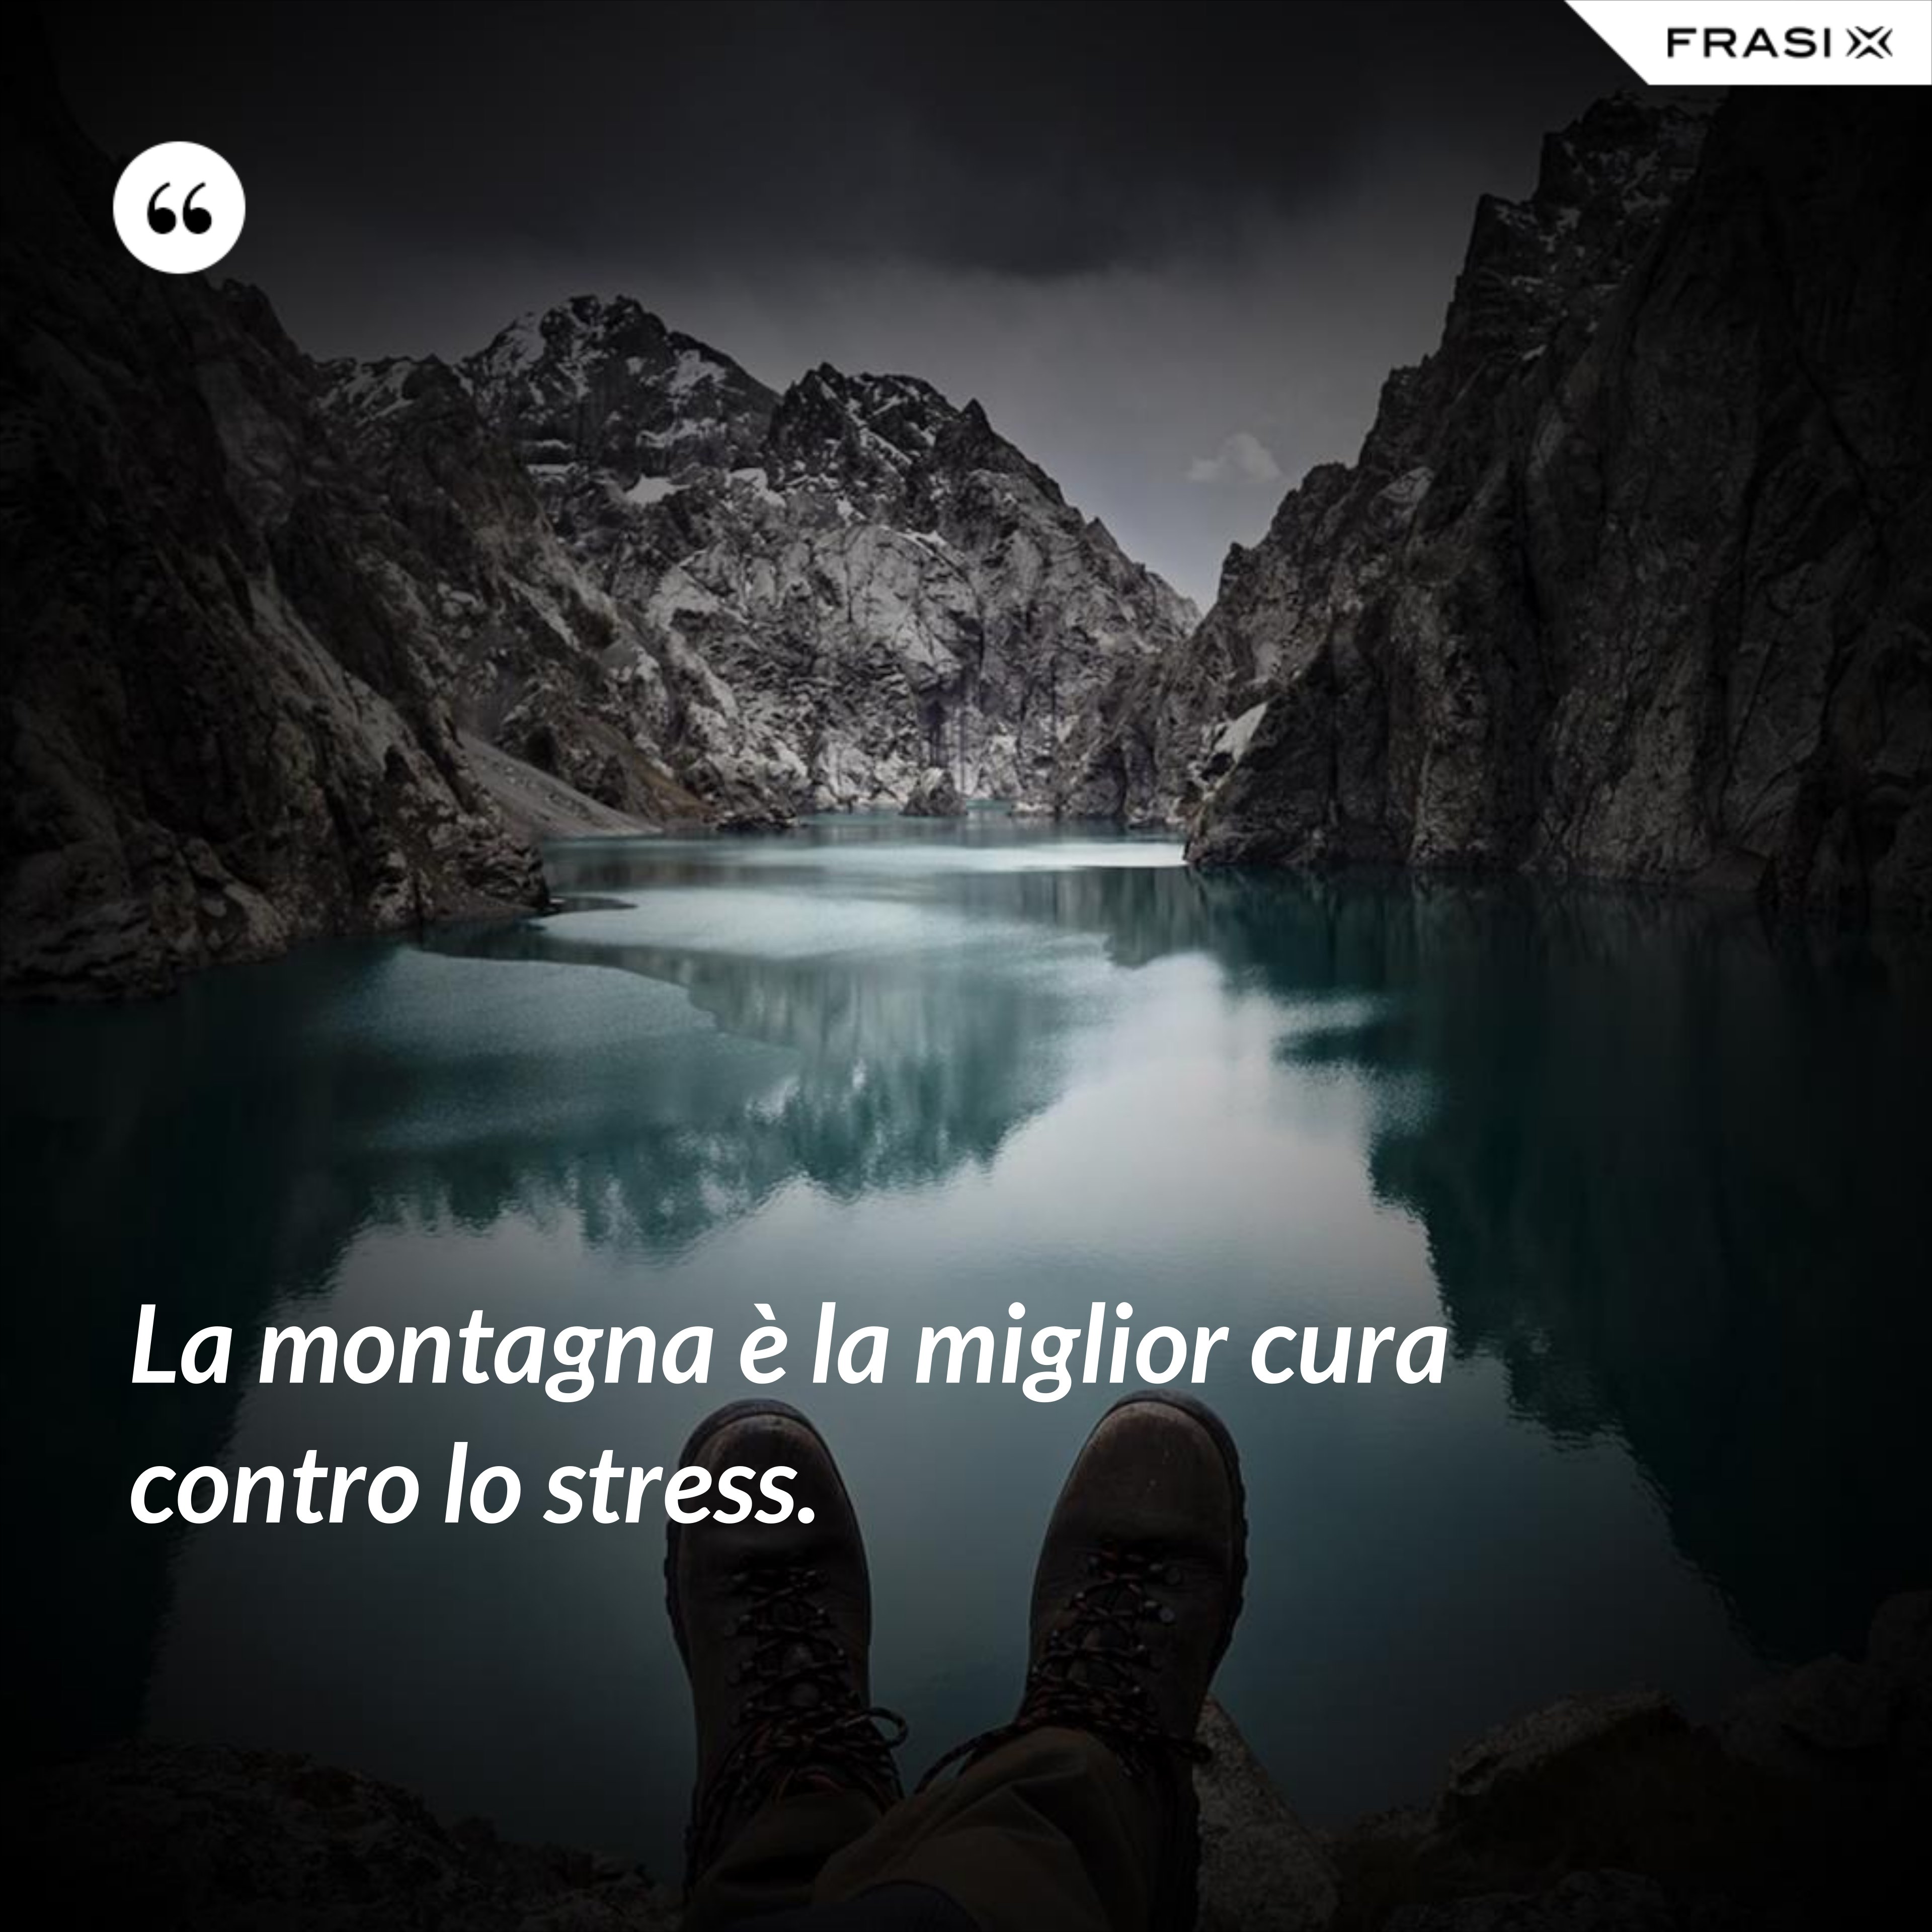 La montagna è la miglior cura contro lo stress. - Anonimo